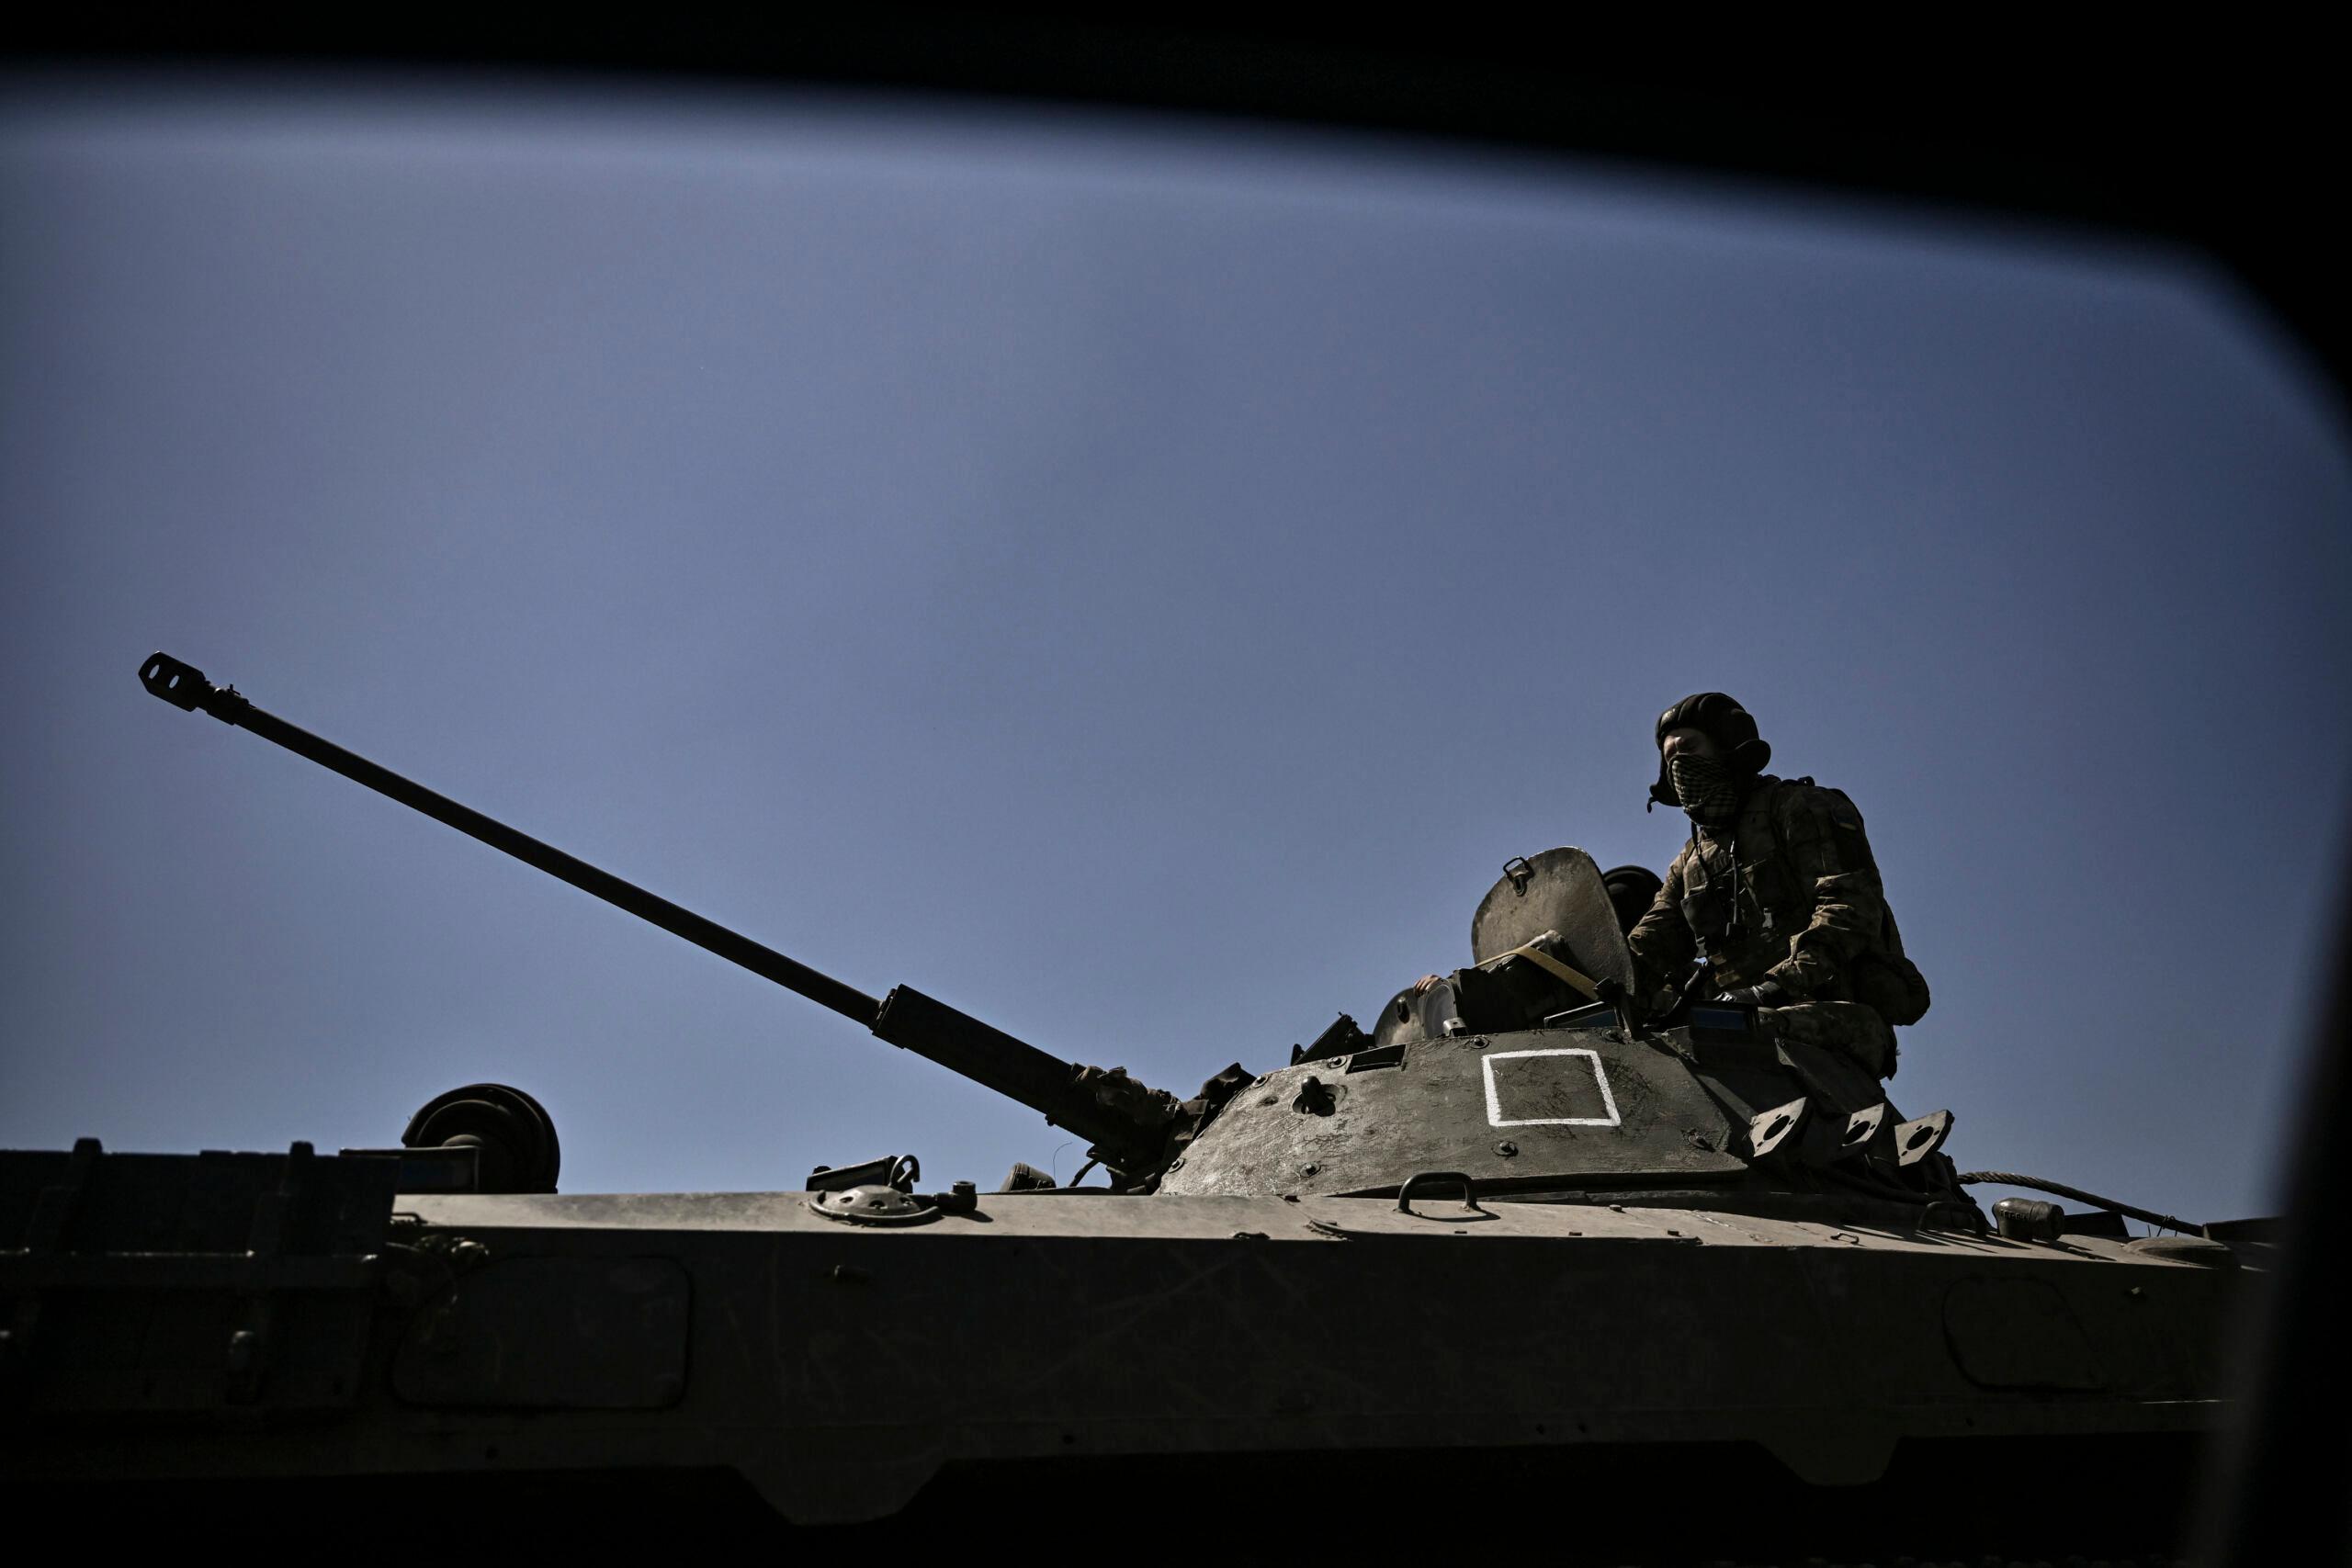 żołnierz stoi na transporterze opancerzonym